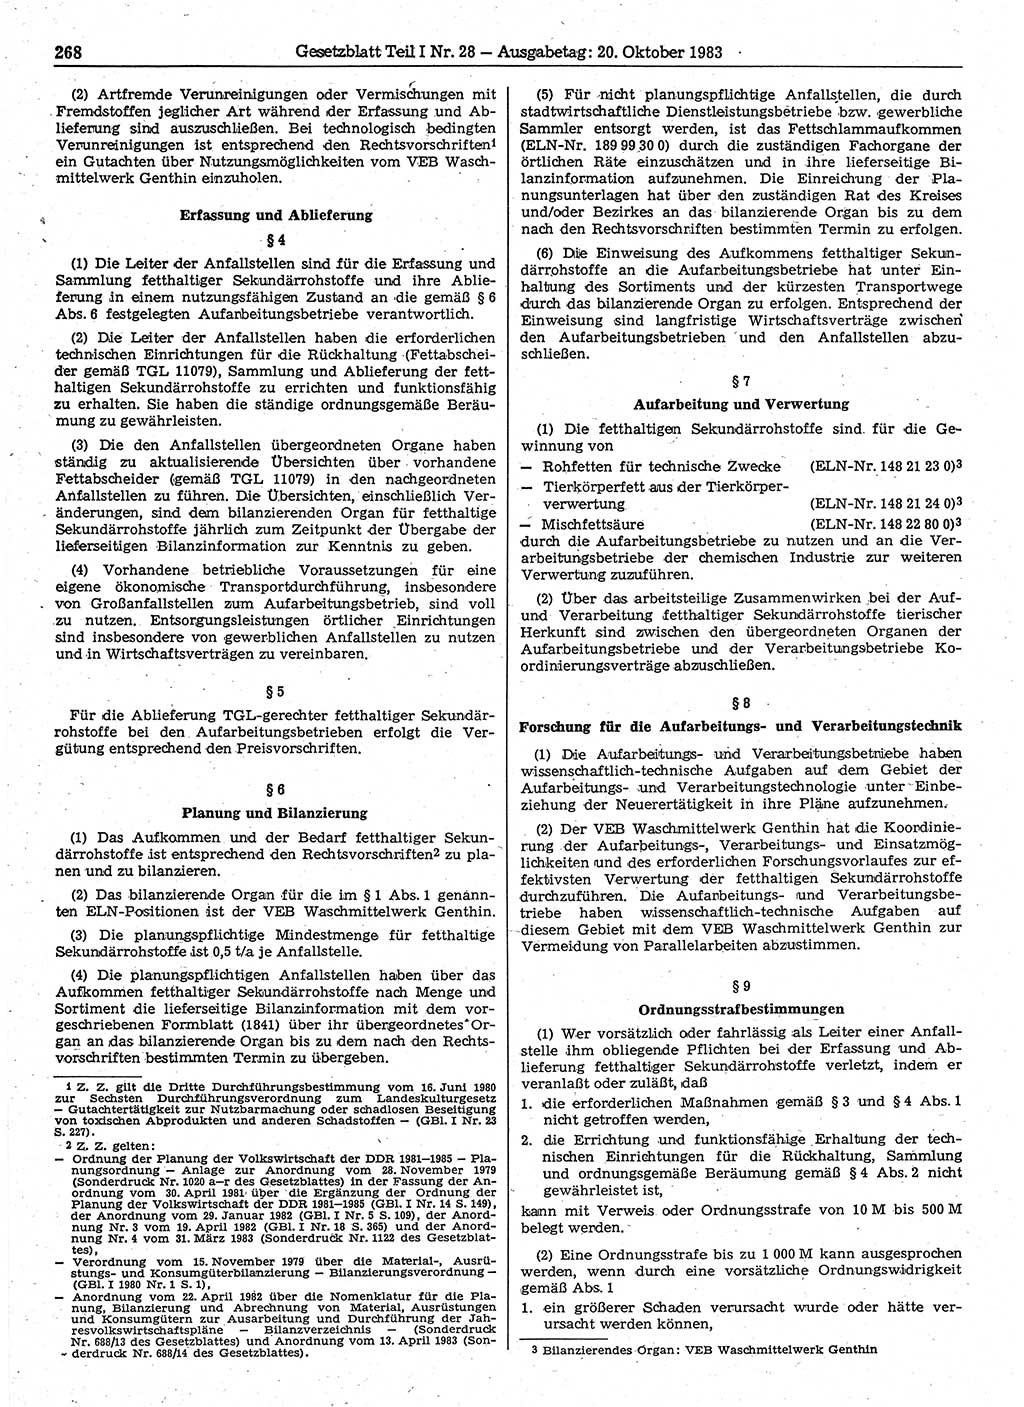 Gesetzblatt (GBl.) der Deutschen Demokratischen Republik (DDR) Teil Ⅰ 1983, Seite 268 (GBl. DDR Ⅰ 1983, S. 268)